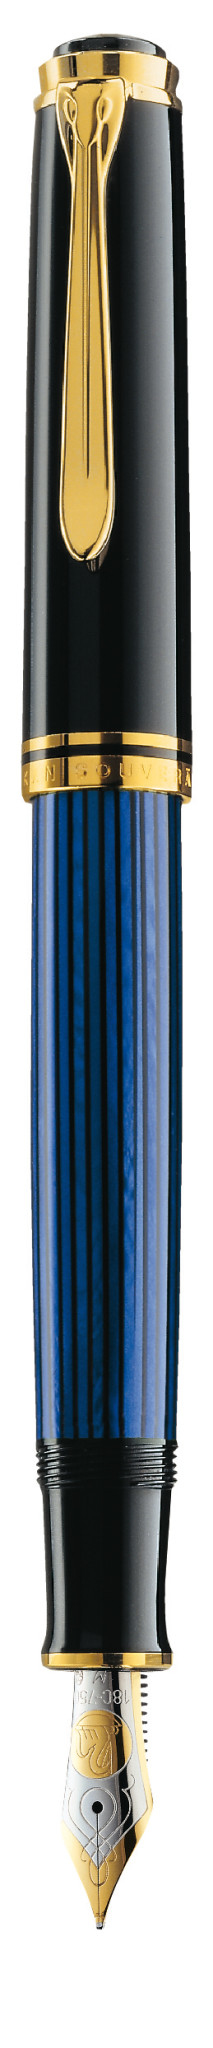 Pelikan Füllhalter M800 Schwarz-Blau M Geschenkbox